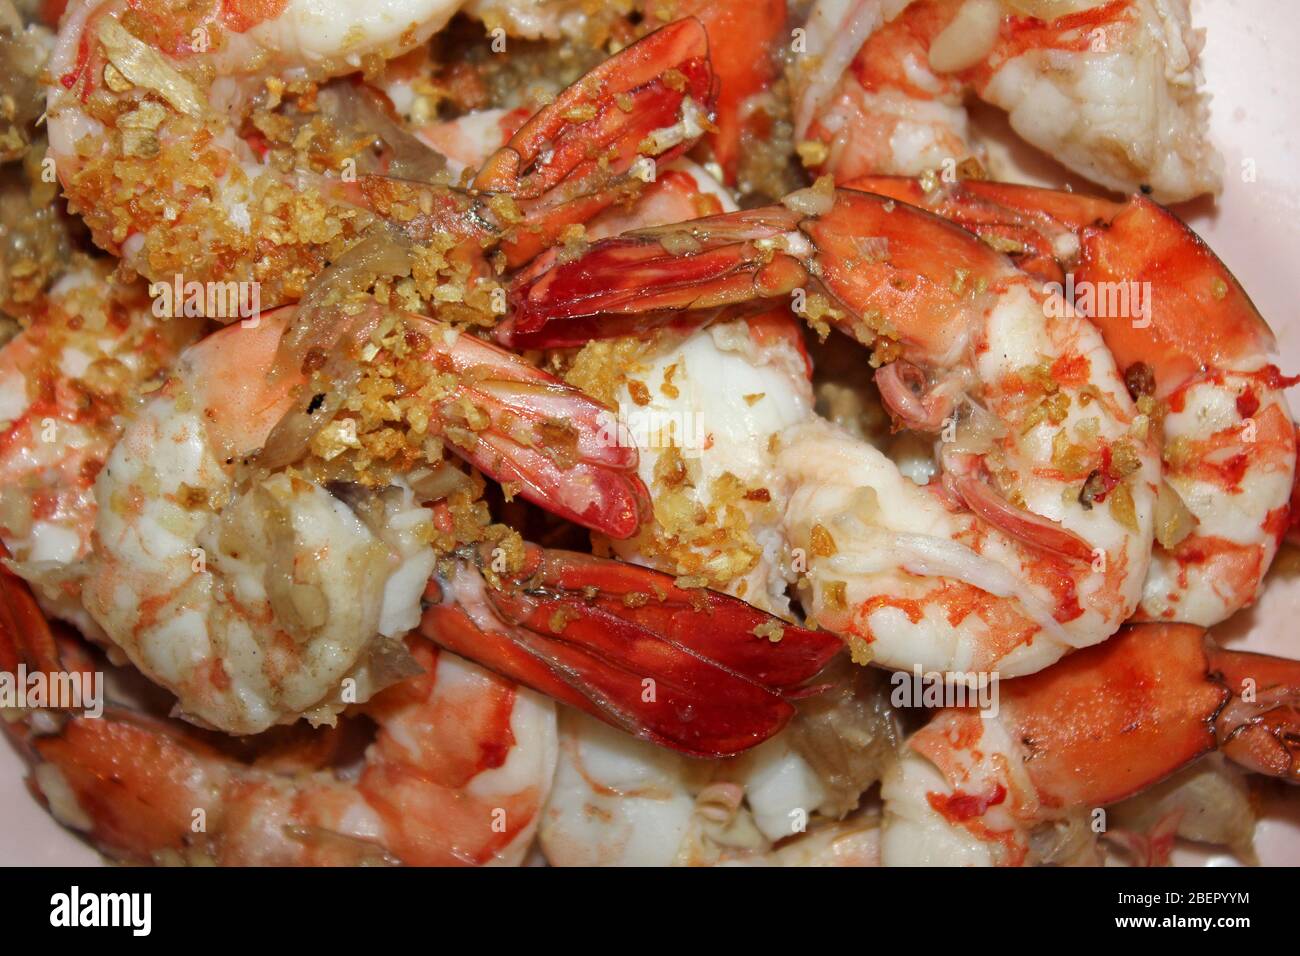 Crevettes à l'ail / crevettes - savoureuse cuisine thaïlandaise Banque D'Images